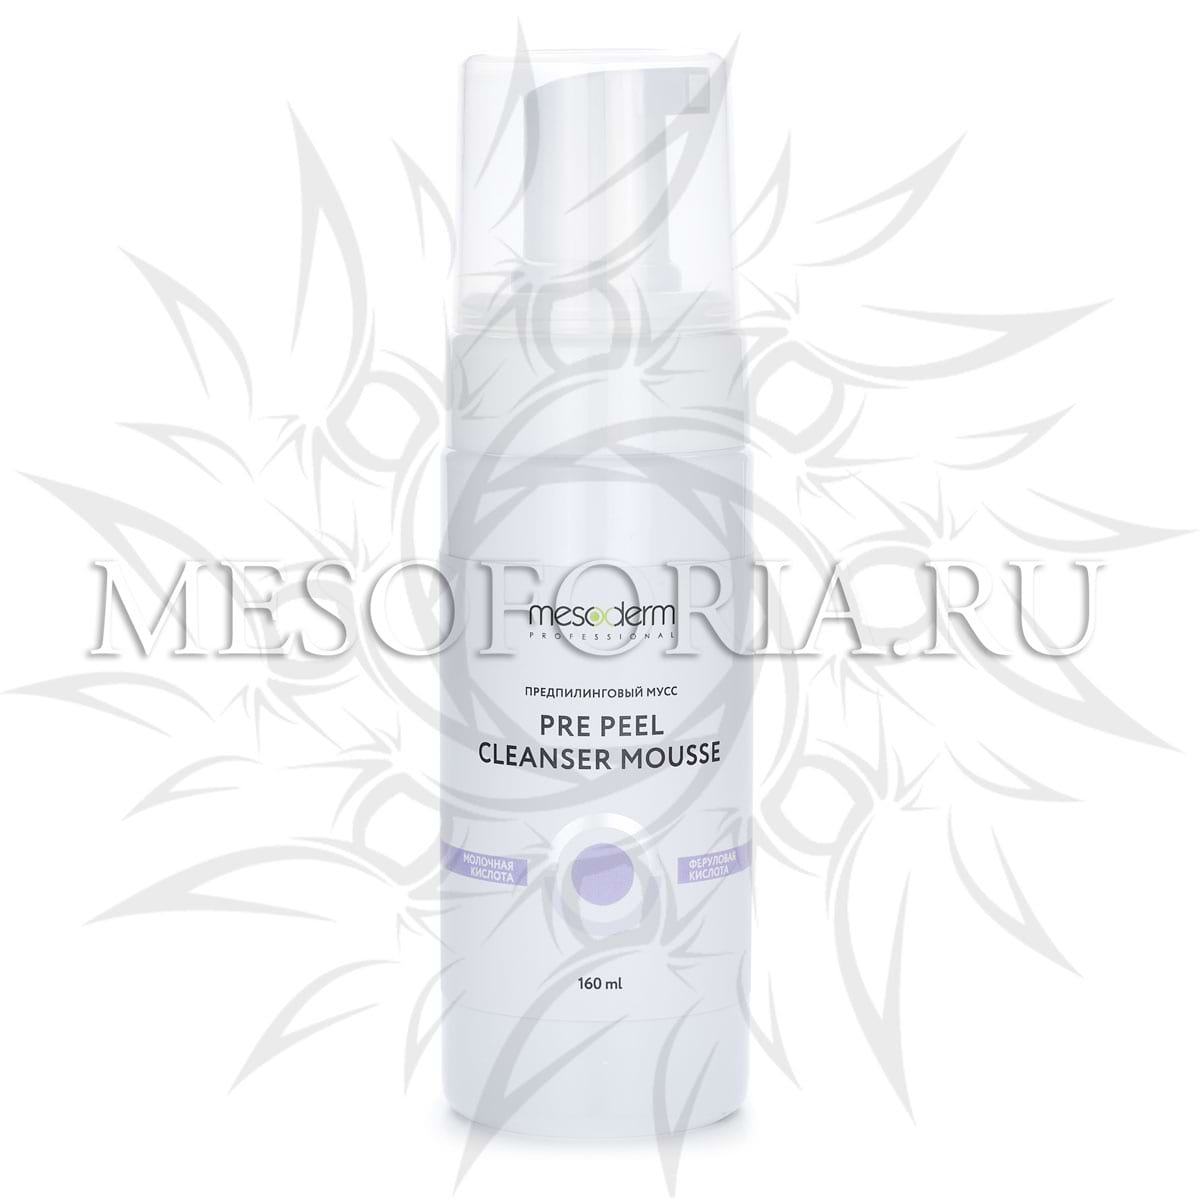 Предпилинговый очищающий мусс с молочной и феруловой кислотой / Pre Peel Cleanser Mousse, Mesoderm (Мезодерм), 160 мл